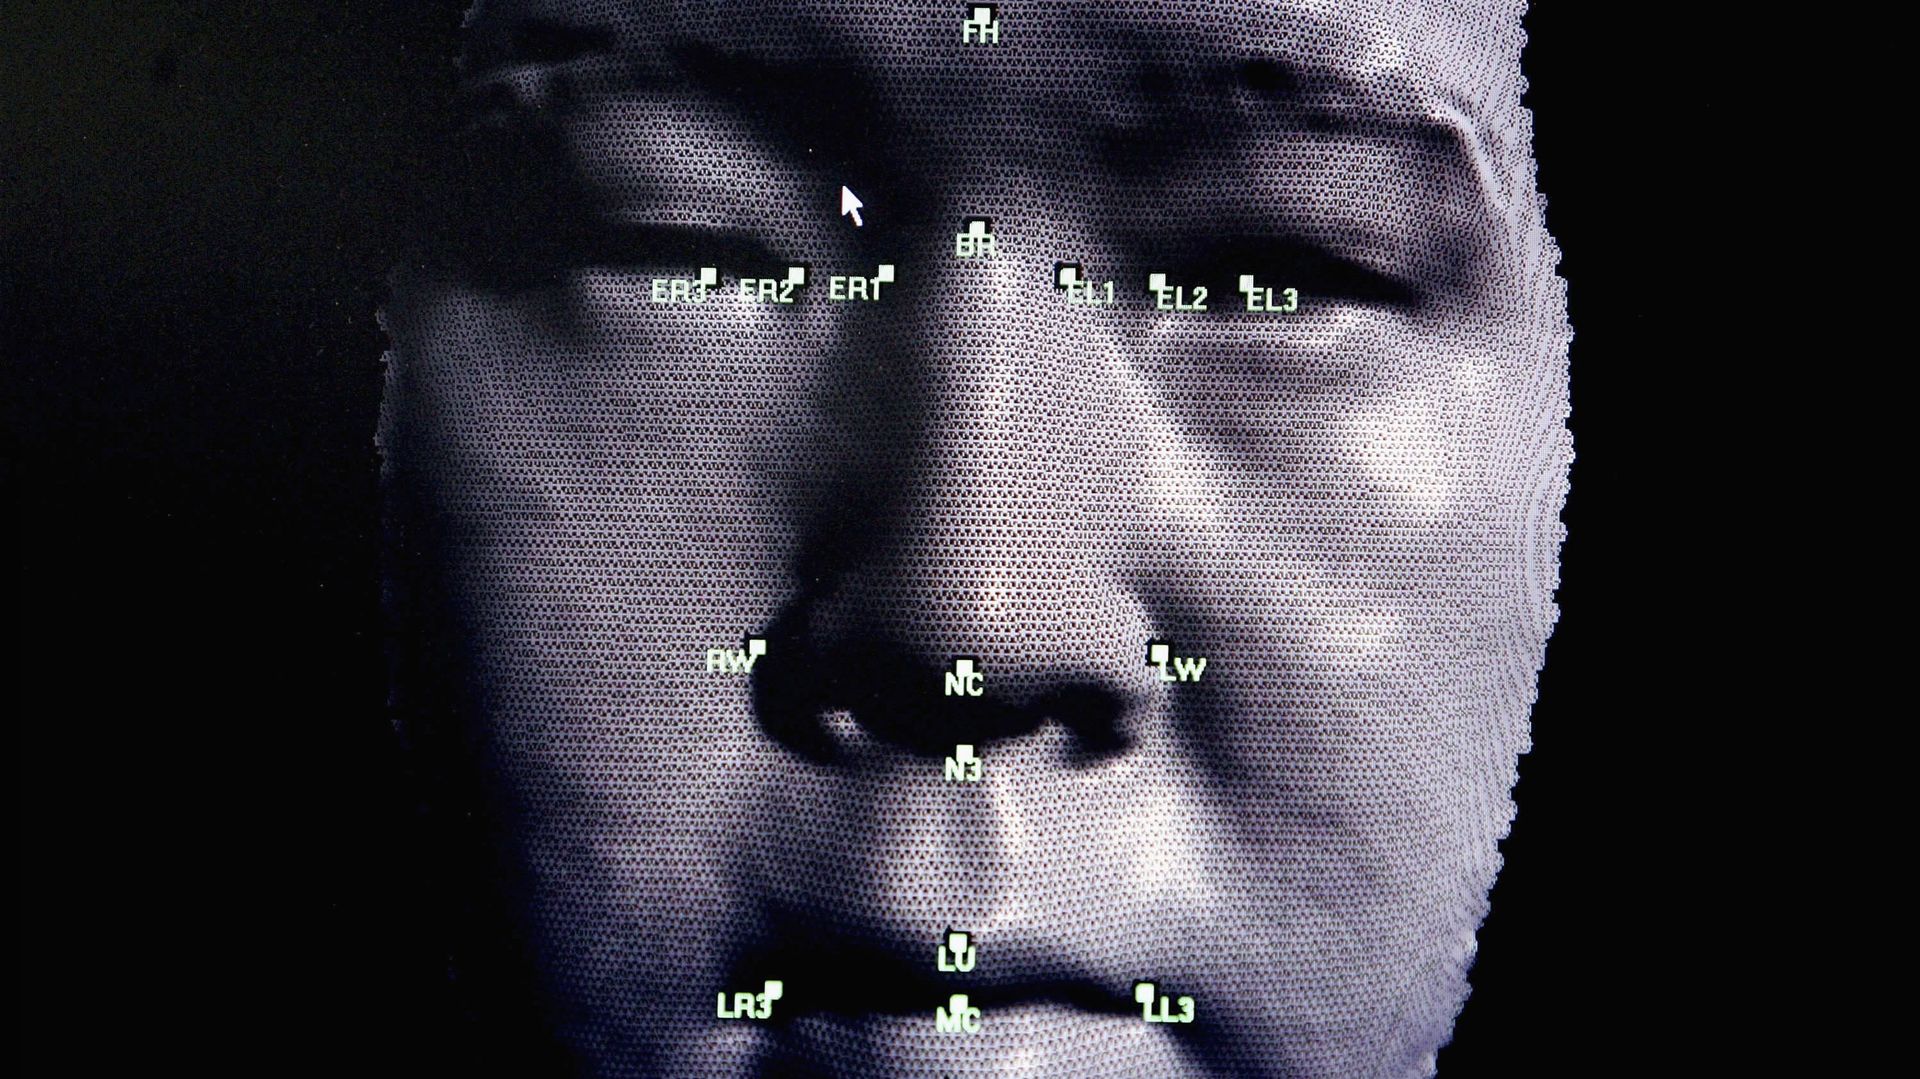 Le masque met en péril l'efficacité des logiciels de reconnaissance faciale